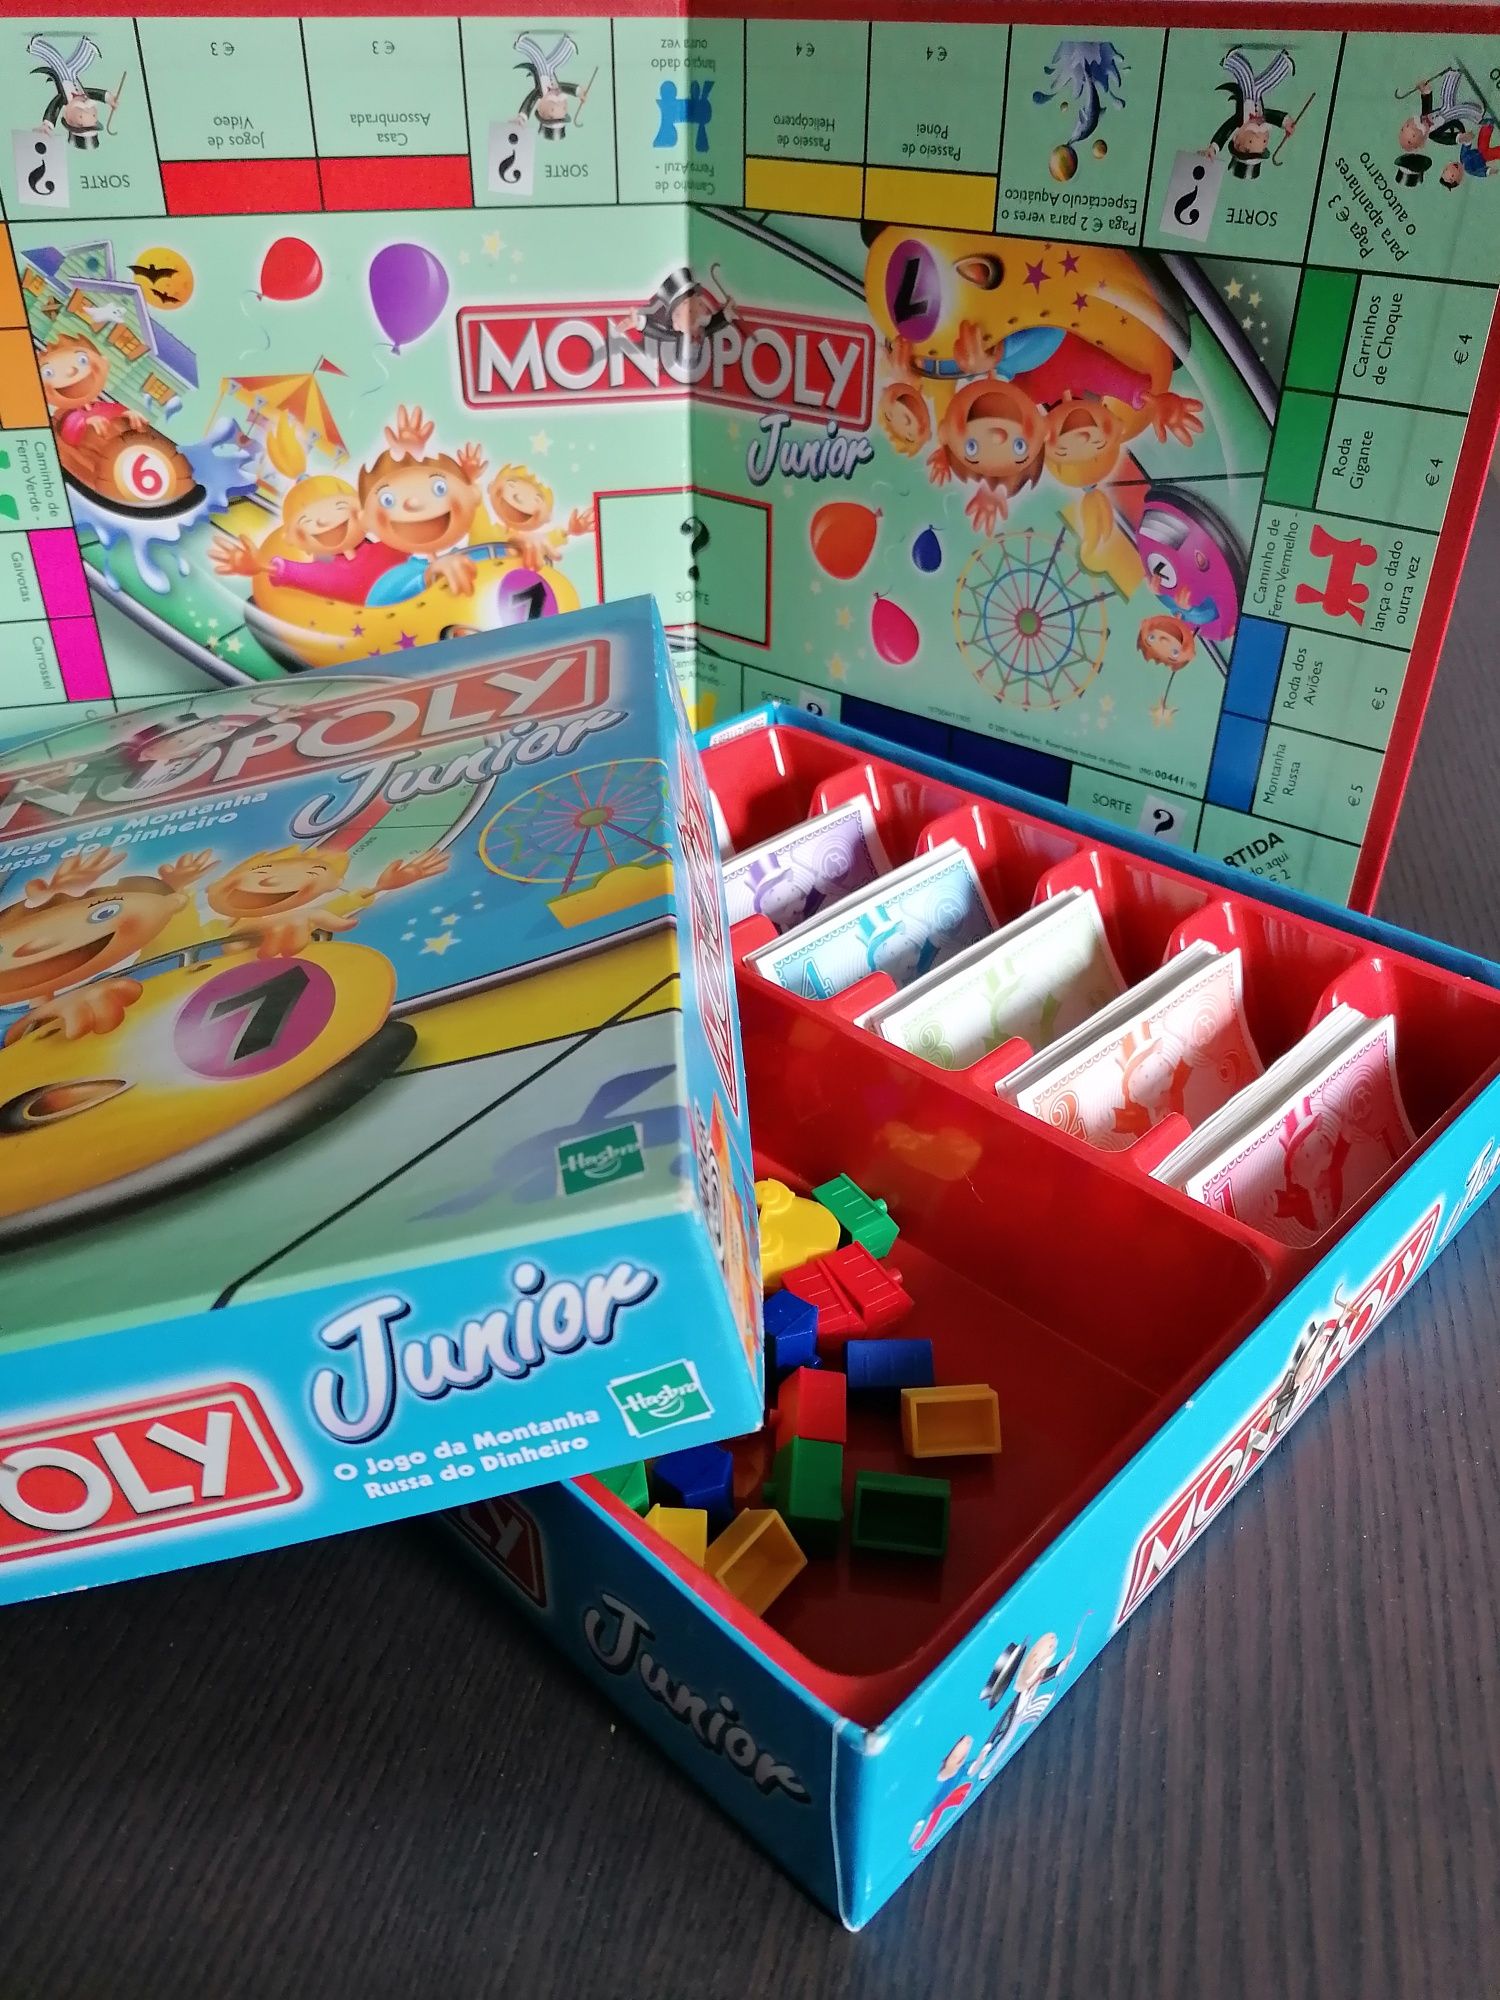 Jogo Monopoly Junior